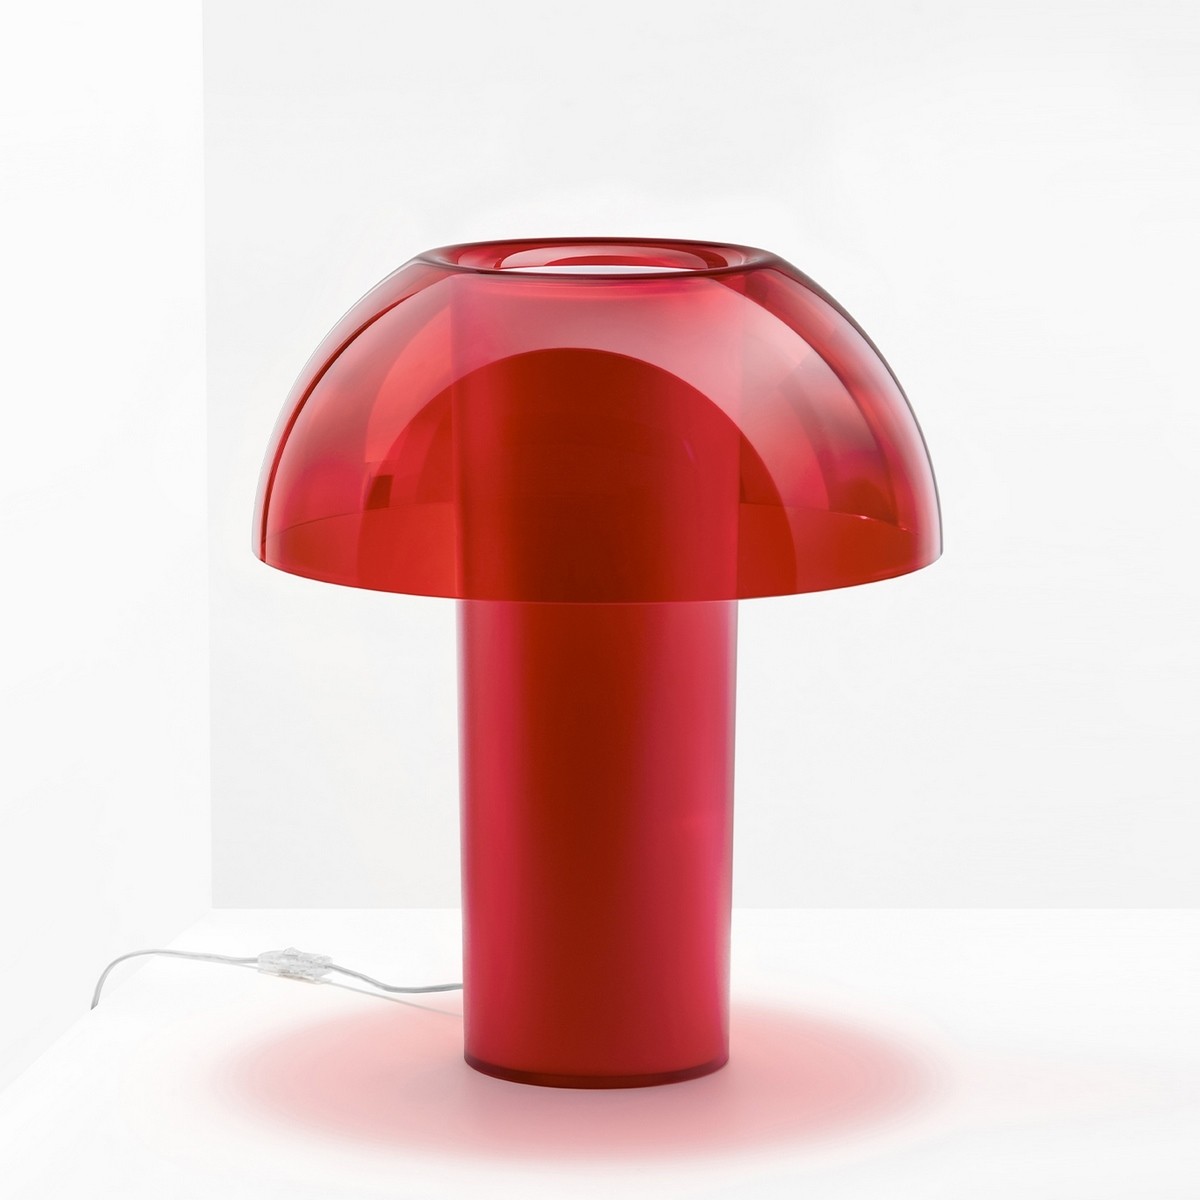 Décoration de bureau - Lampe design COLETTE → Aménagement - Agencement -  Mahora Concept